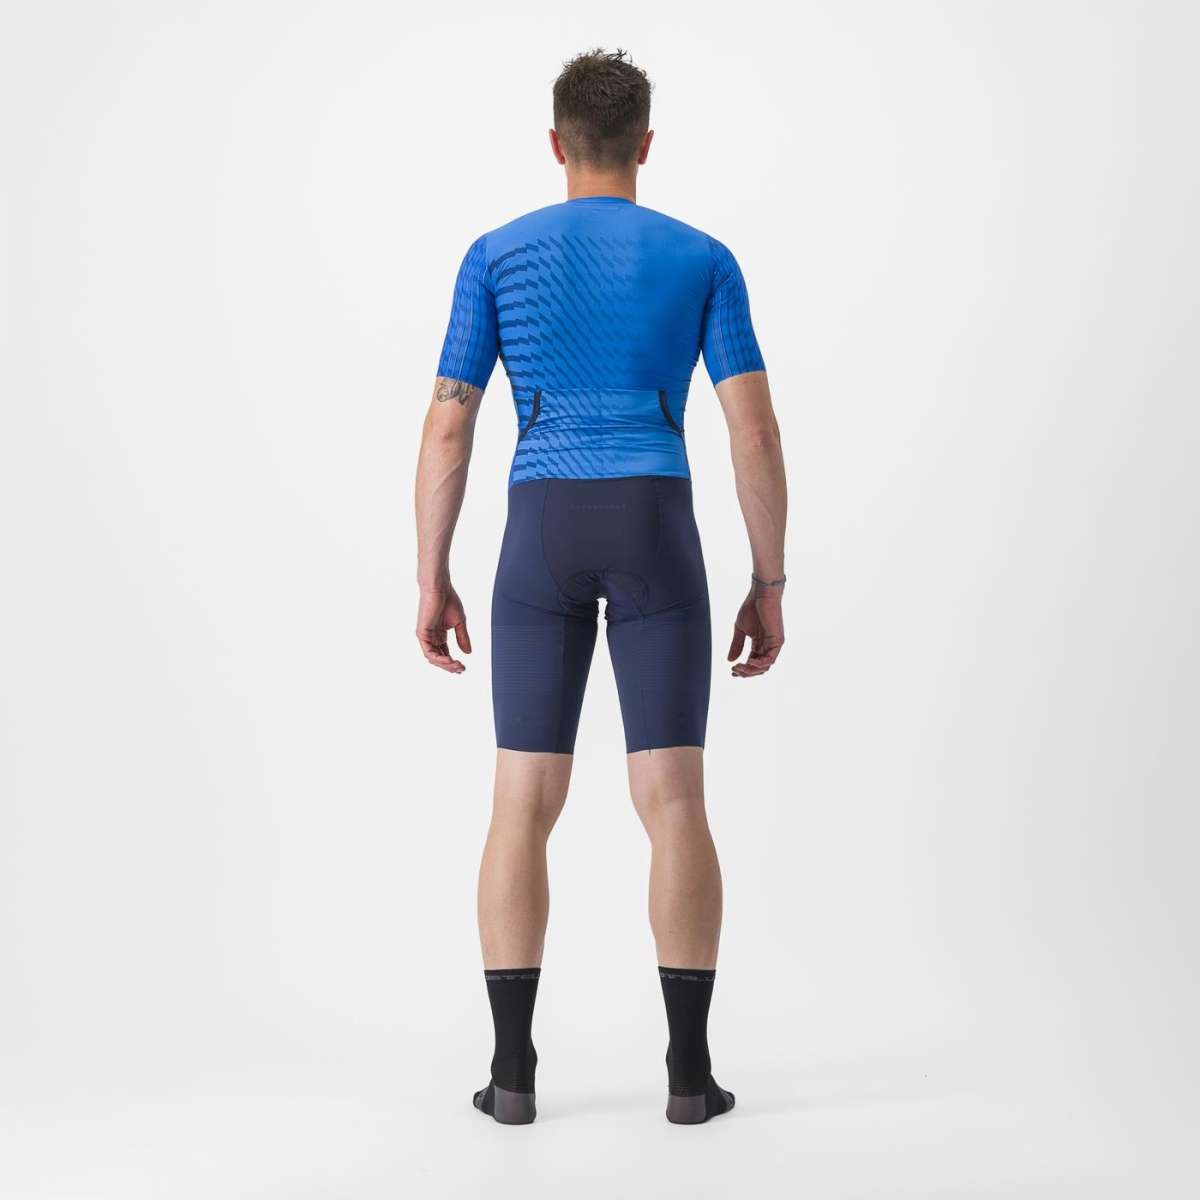 Castelli PR 2 Speed Men's Cycling Suit (Drive Blue)